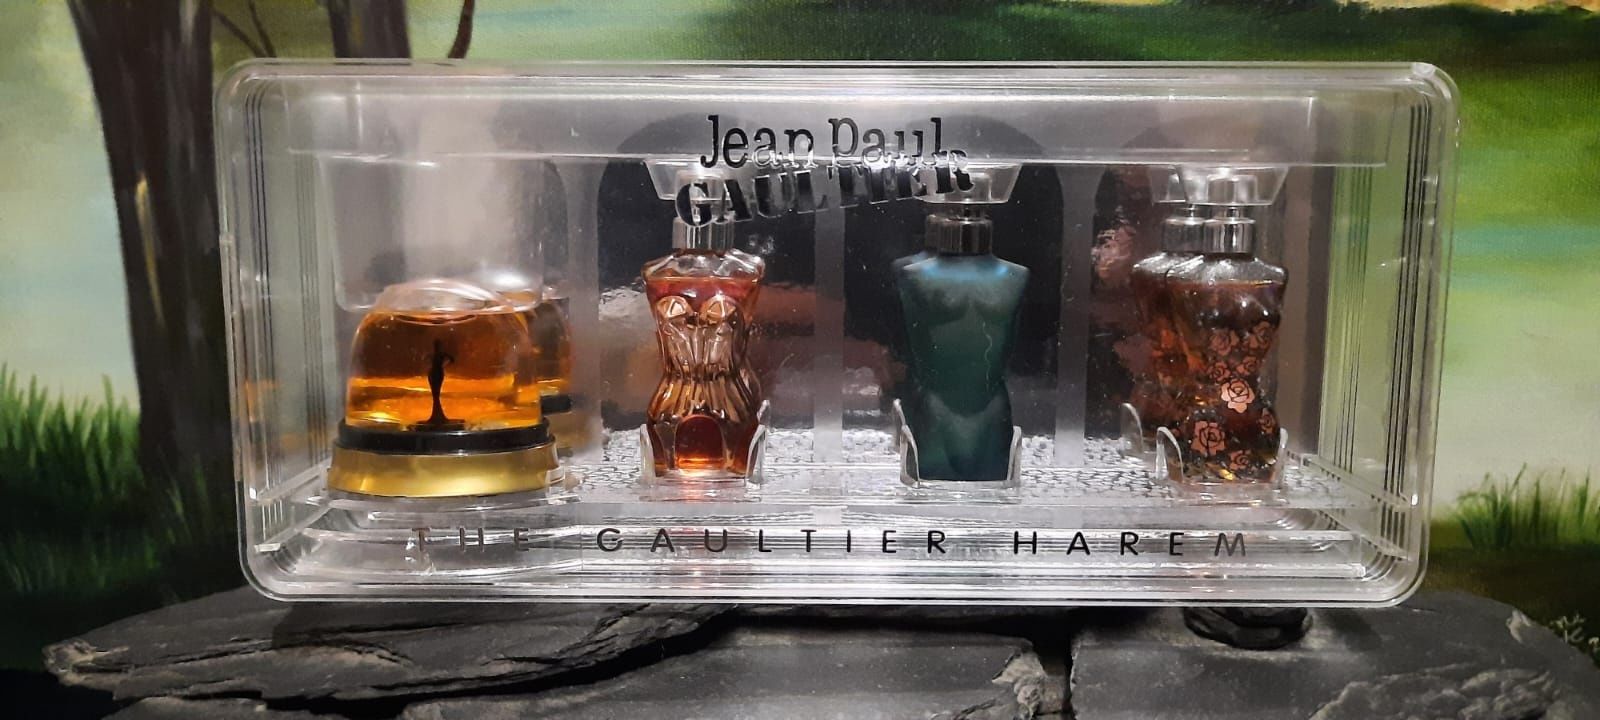 Coffret com quatro perfumes miniatura originais